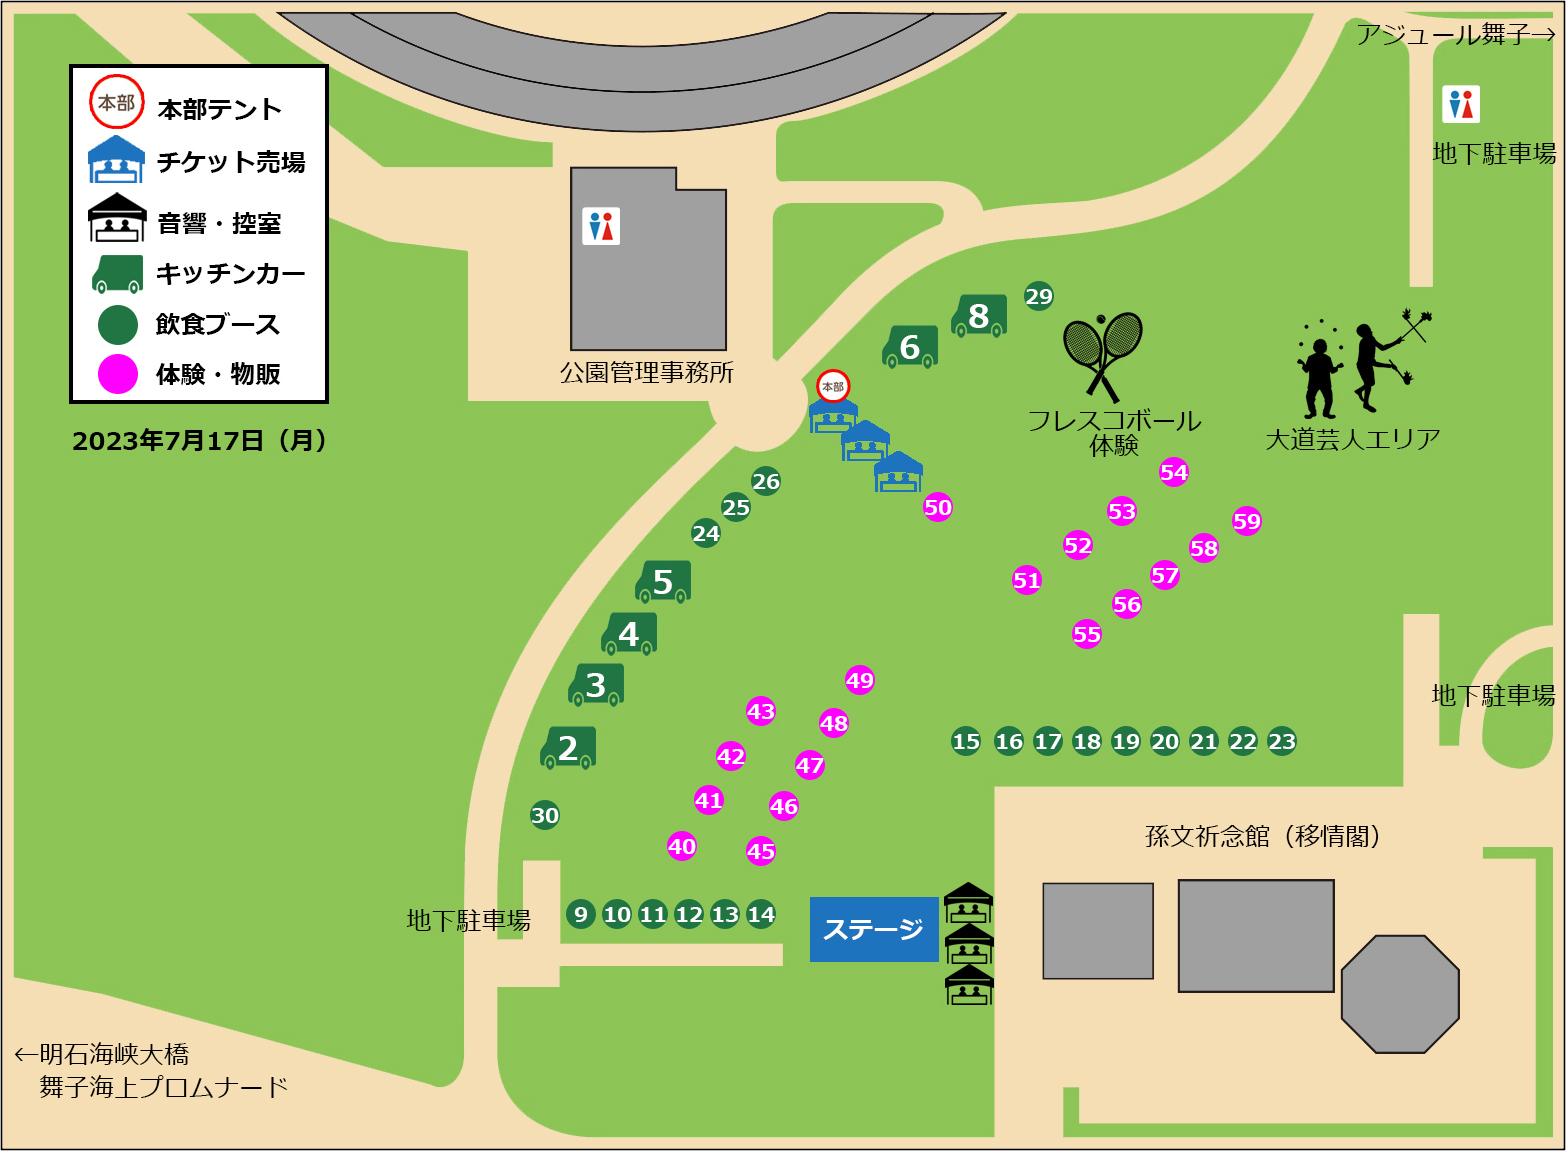 串フェスin神戸2023 7月17日レイアウト図